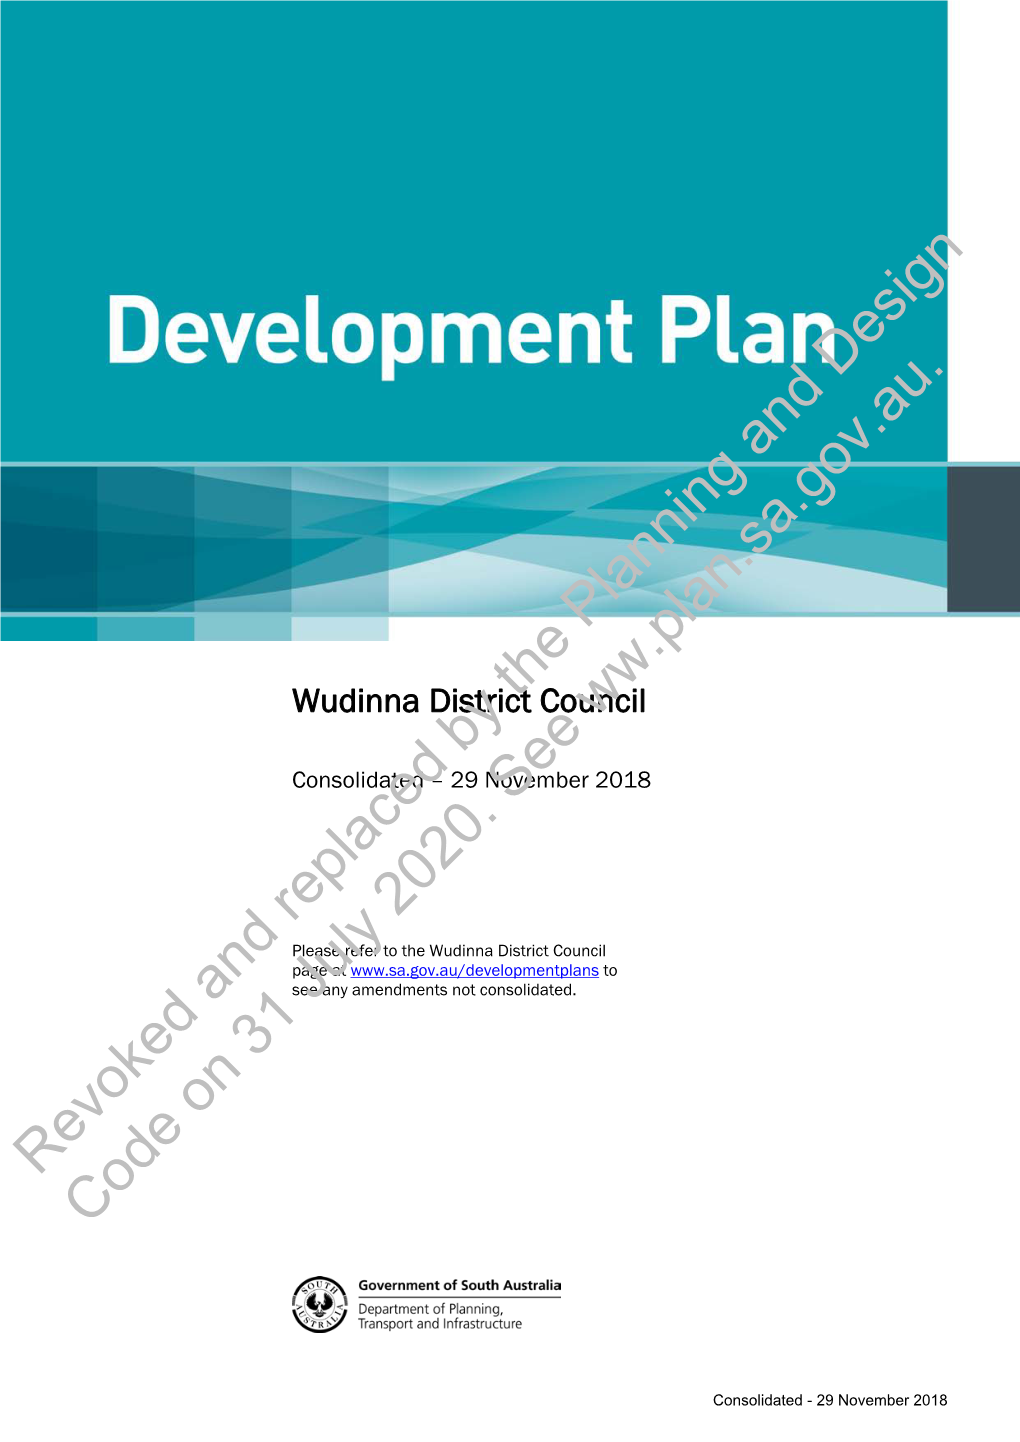 Wudinna District Council Development Plan